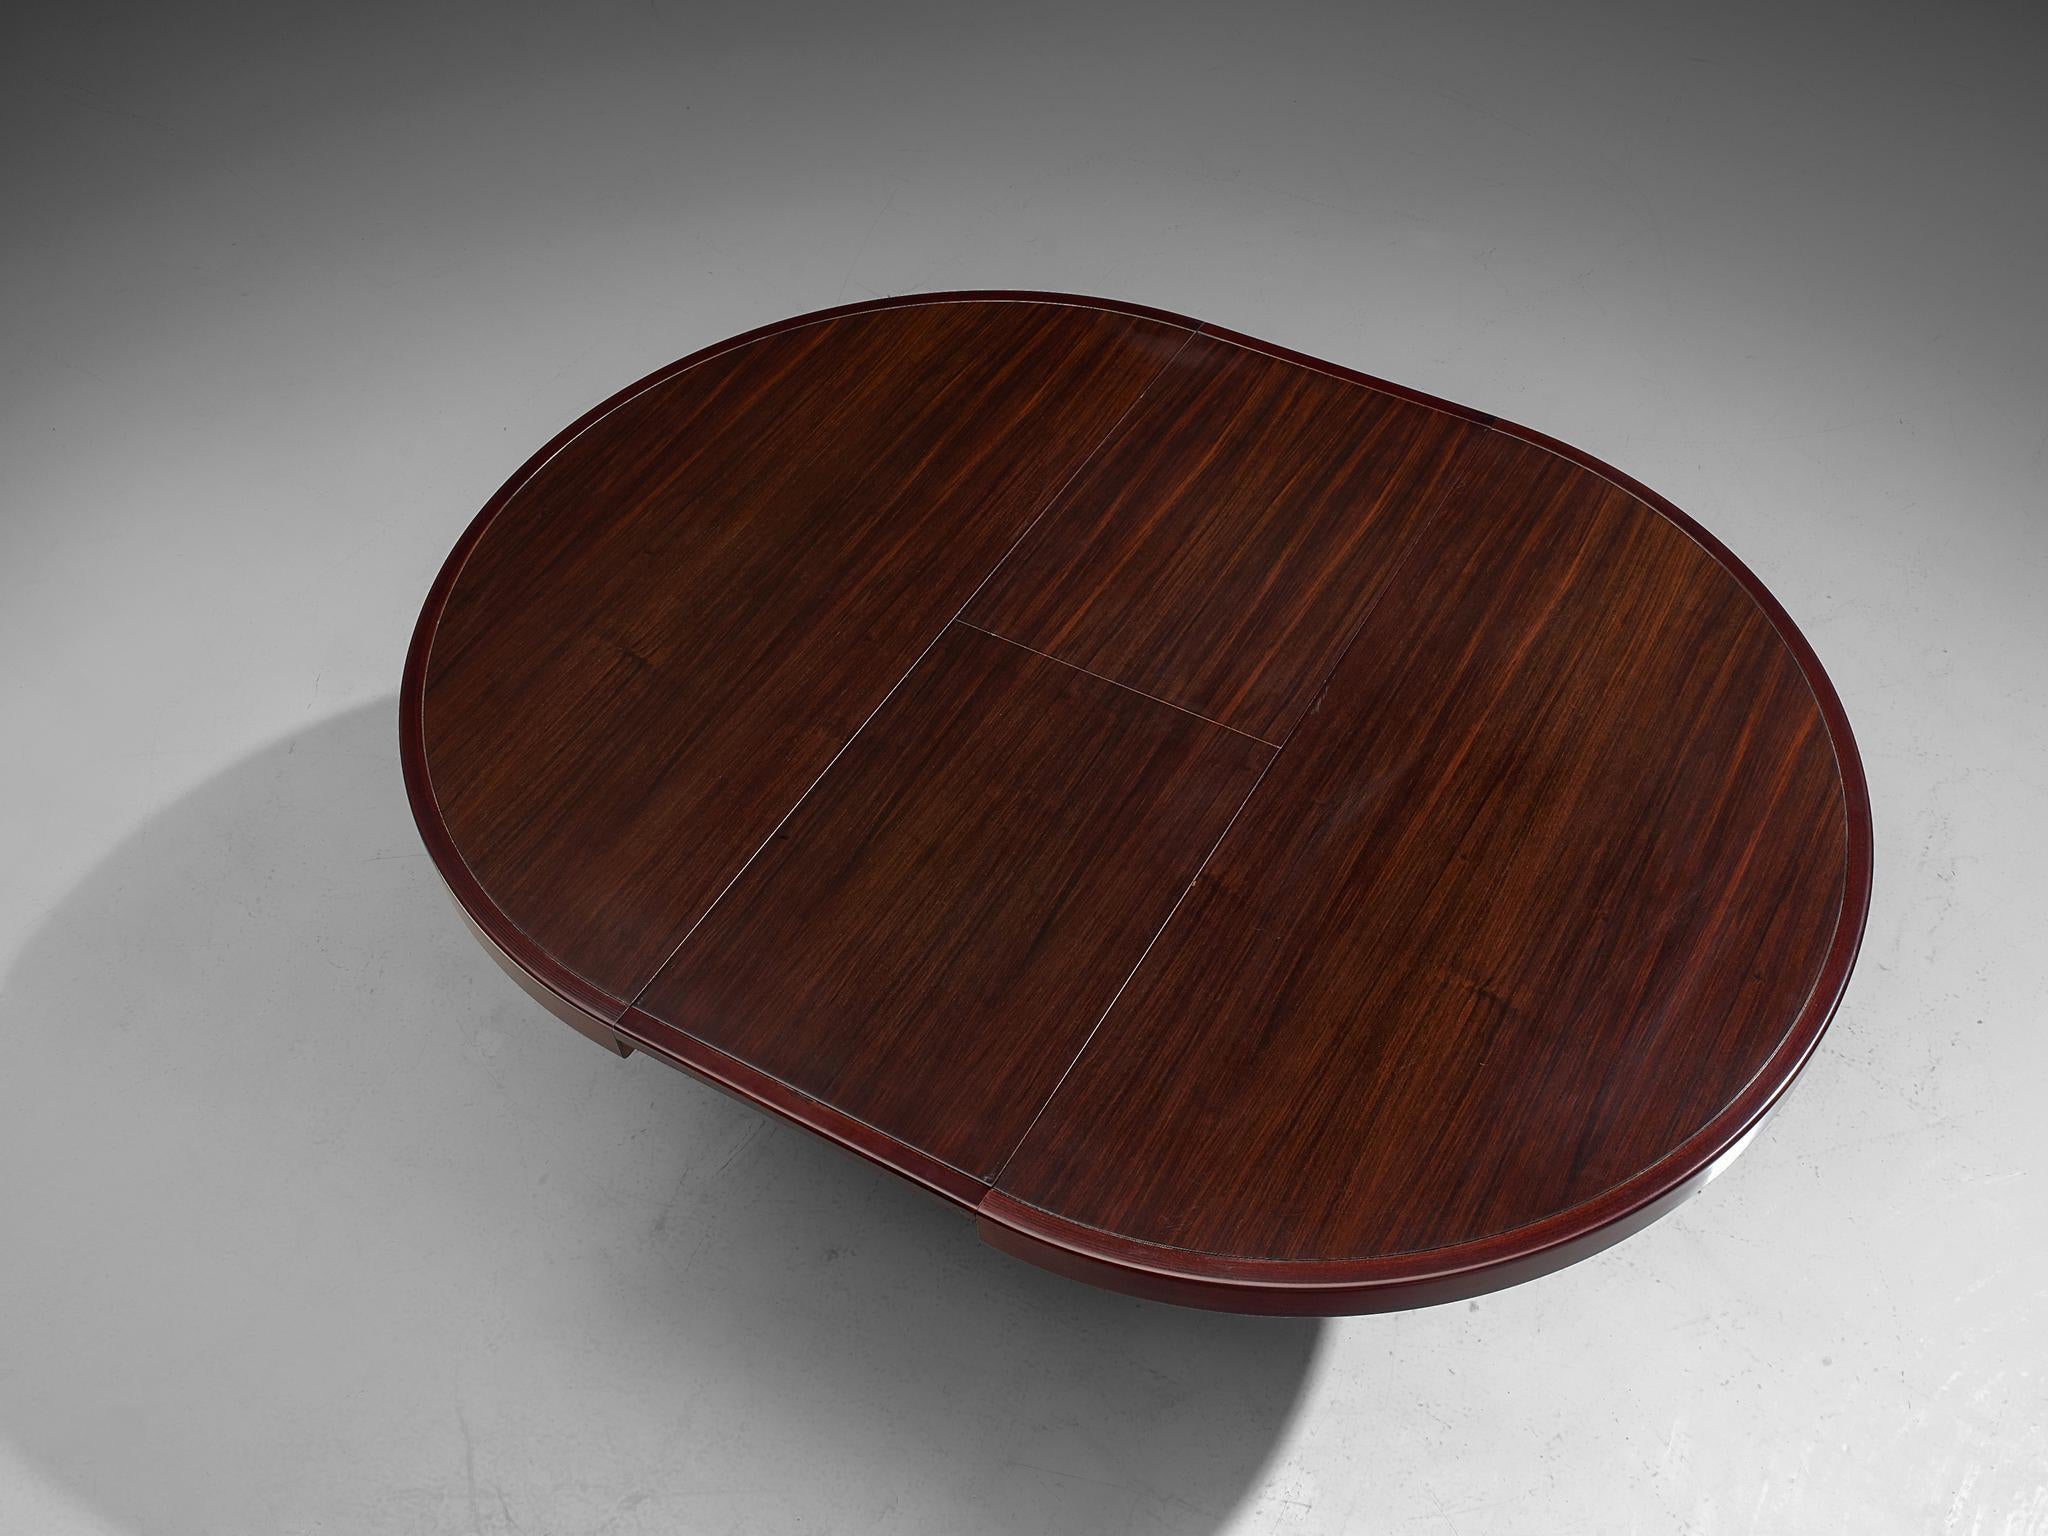 Wood Angelo Mangiarotti Extendable Table in Mahogany